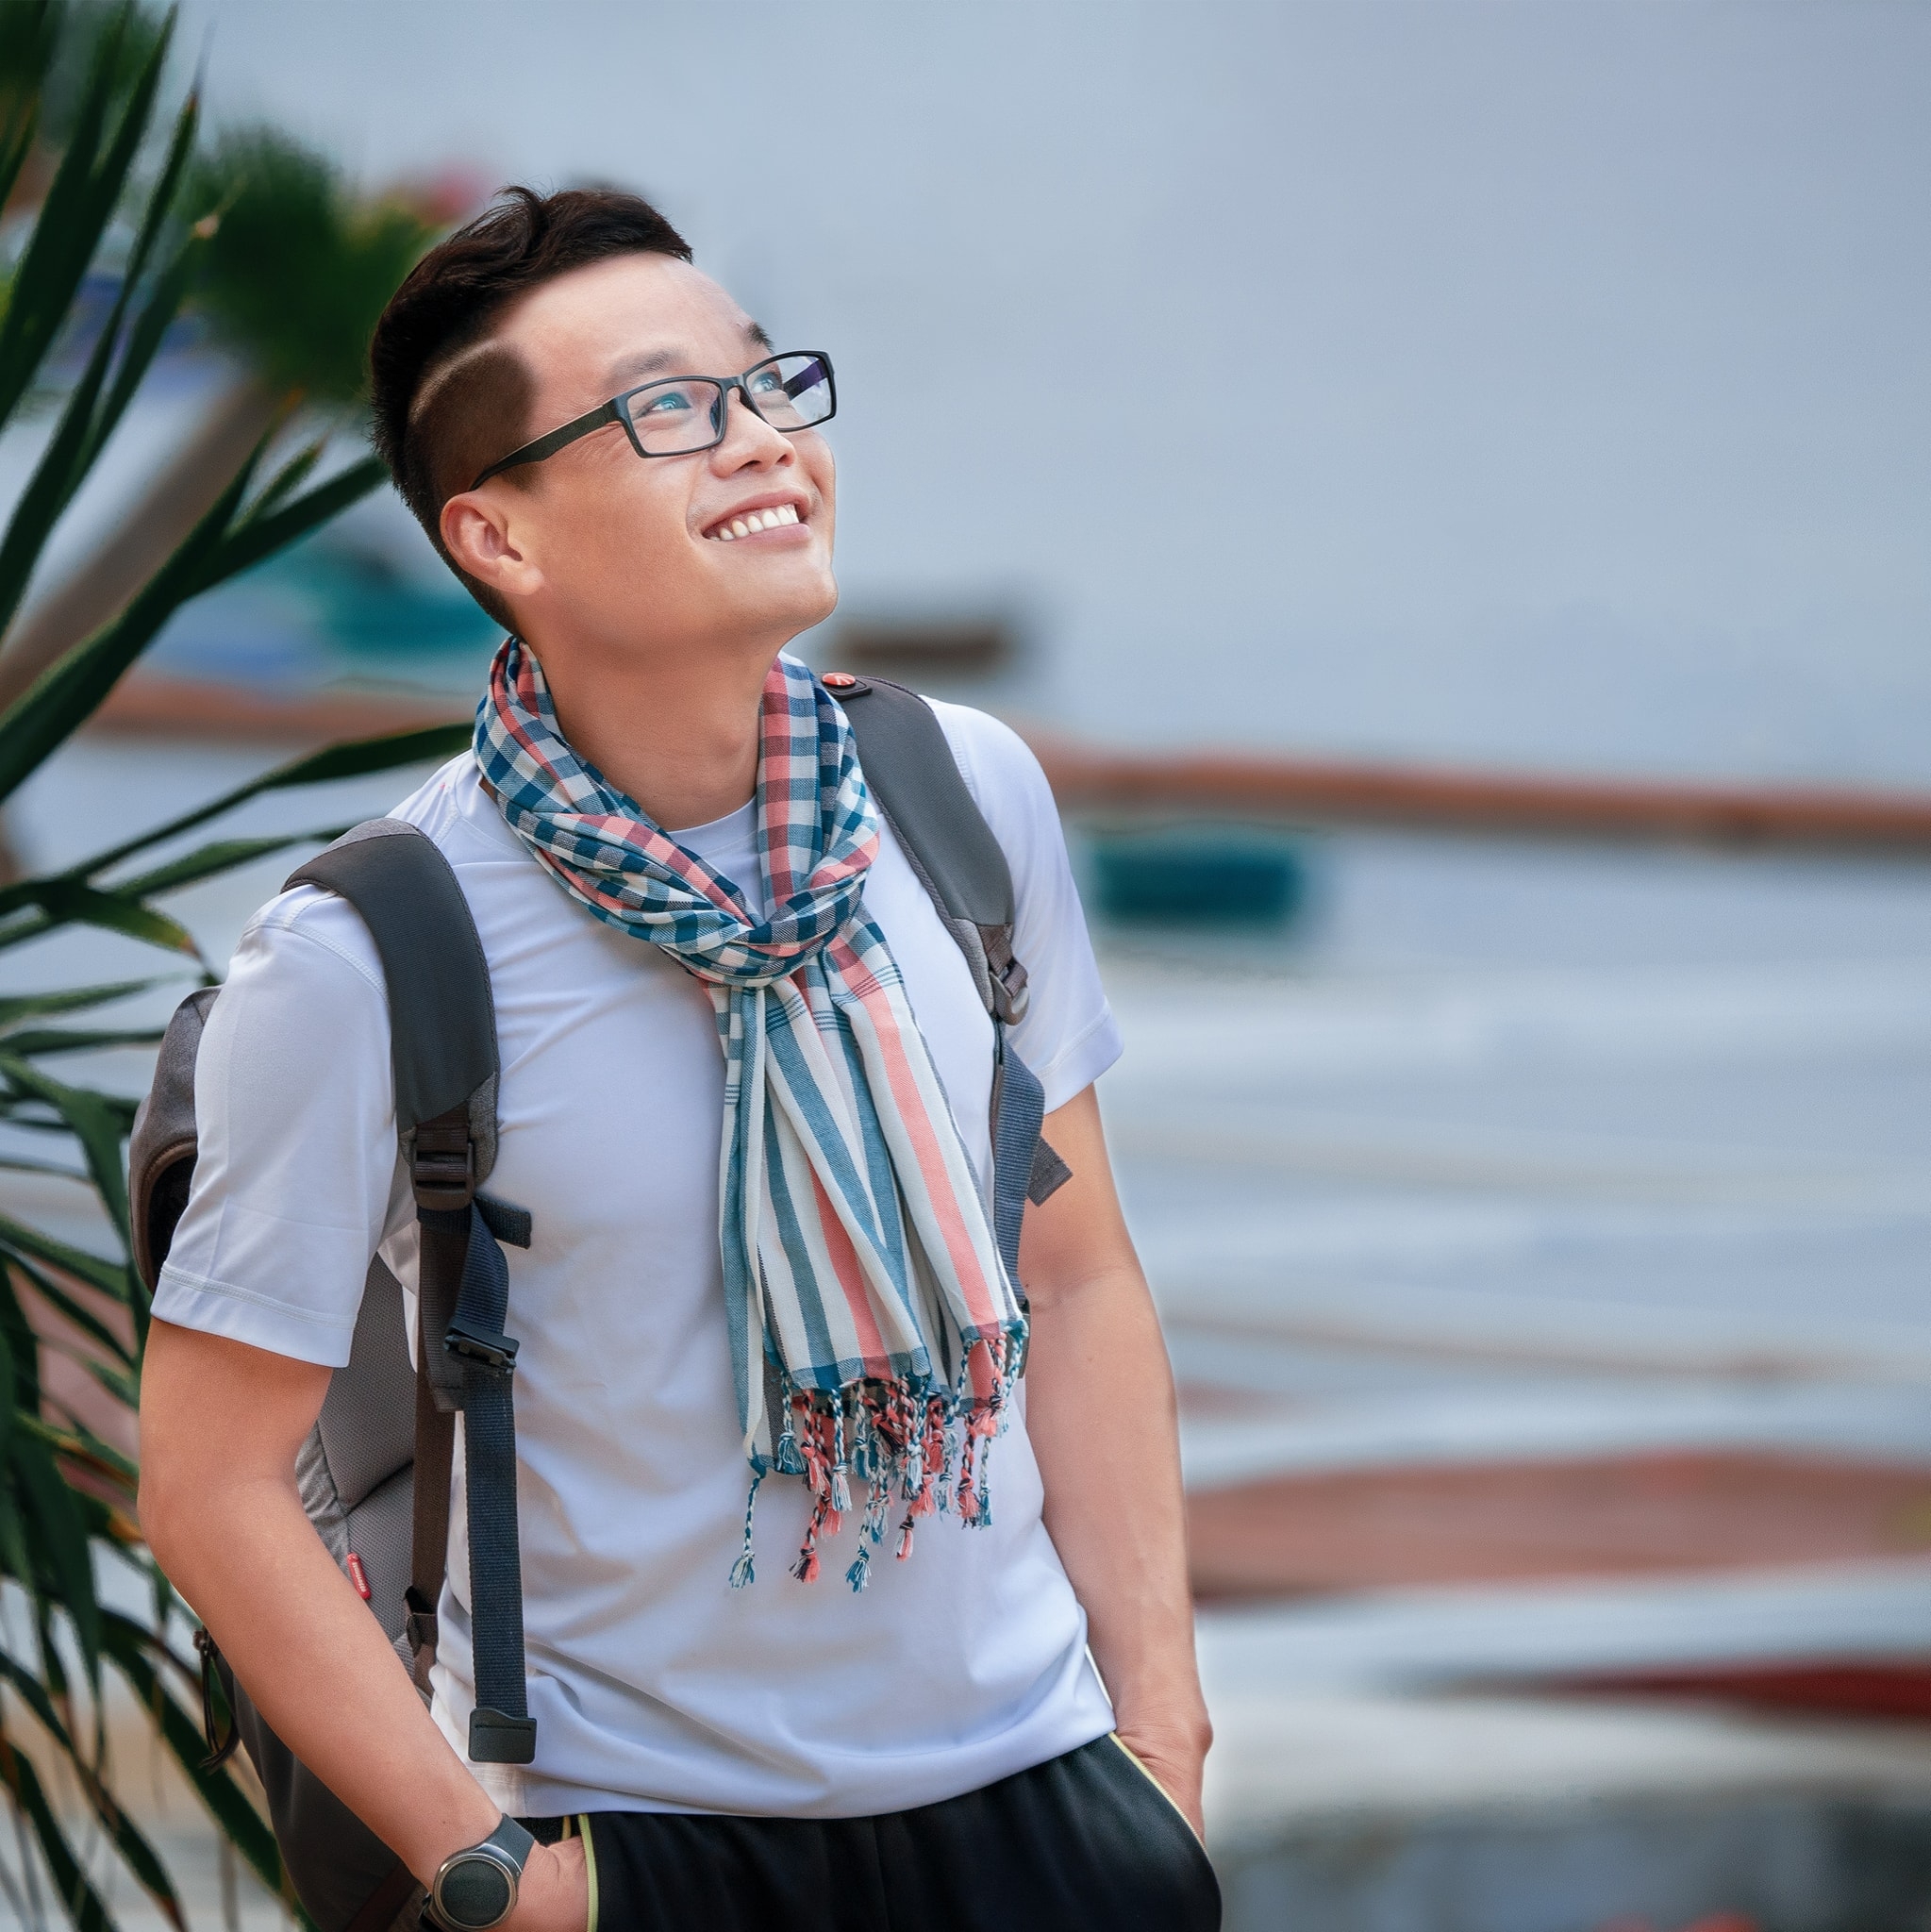 Nhiếp ảnh gia quê Phú Yên được vinh danh tại cuộc thi ảnh quốc tế - 3